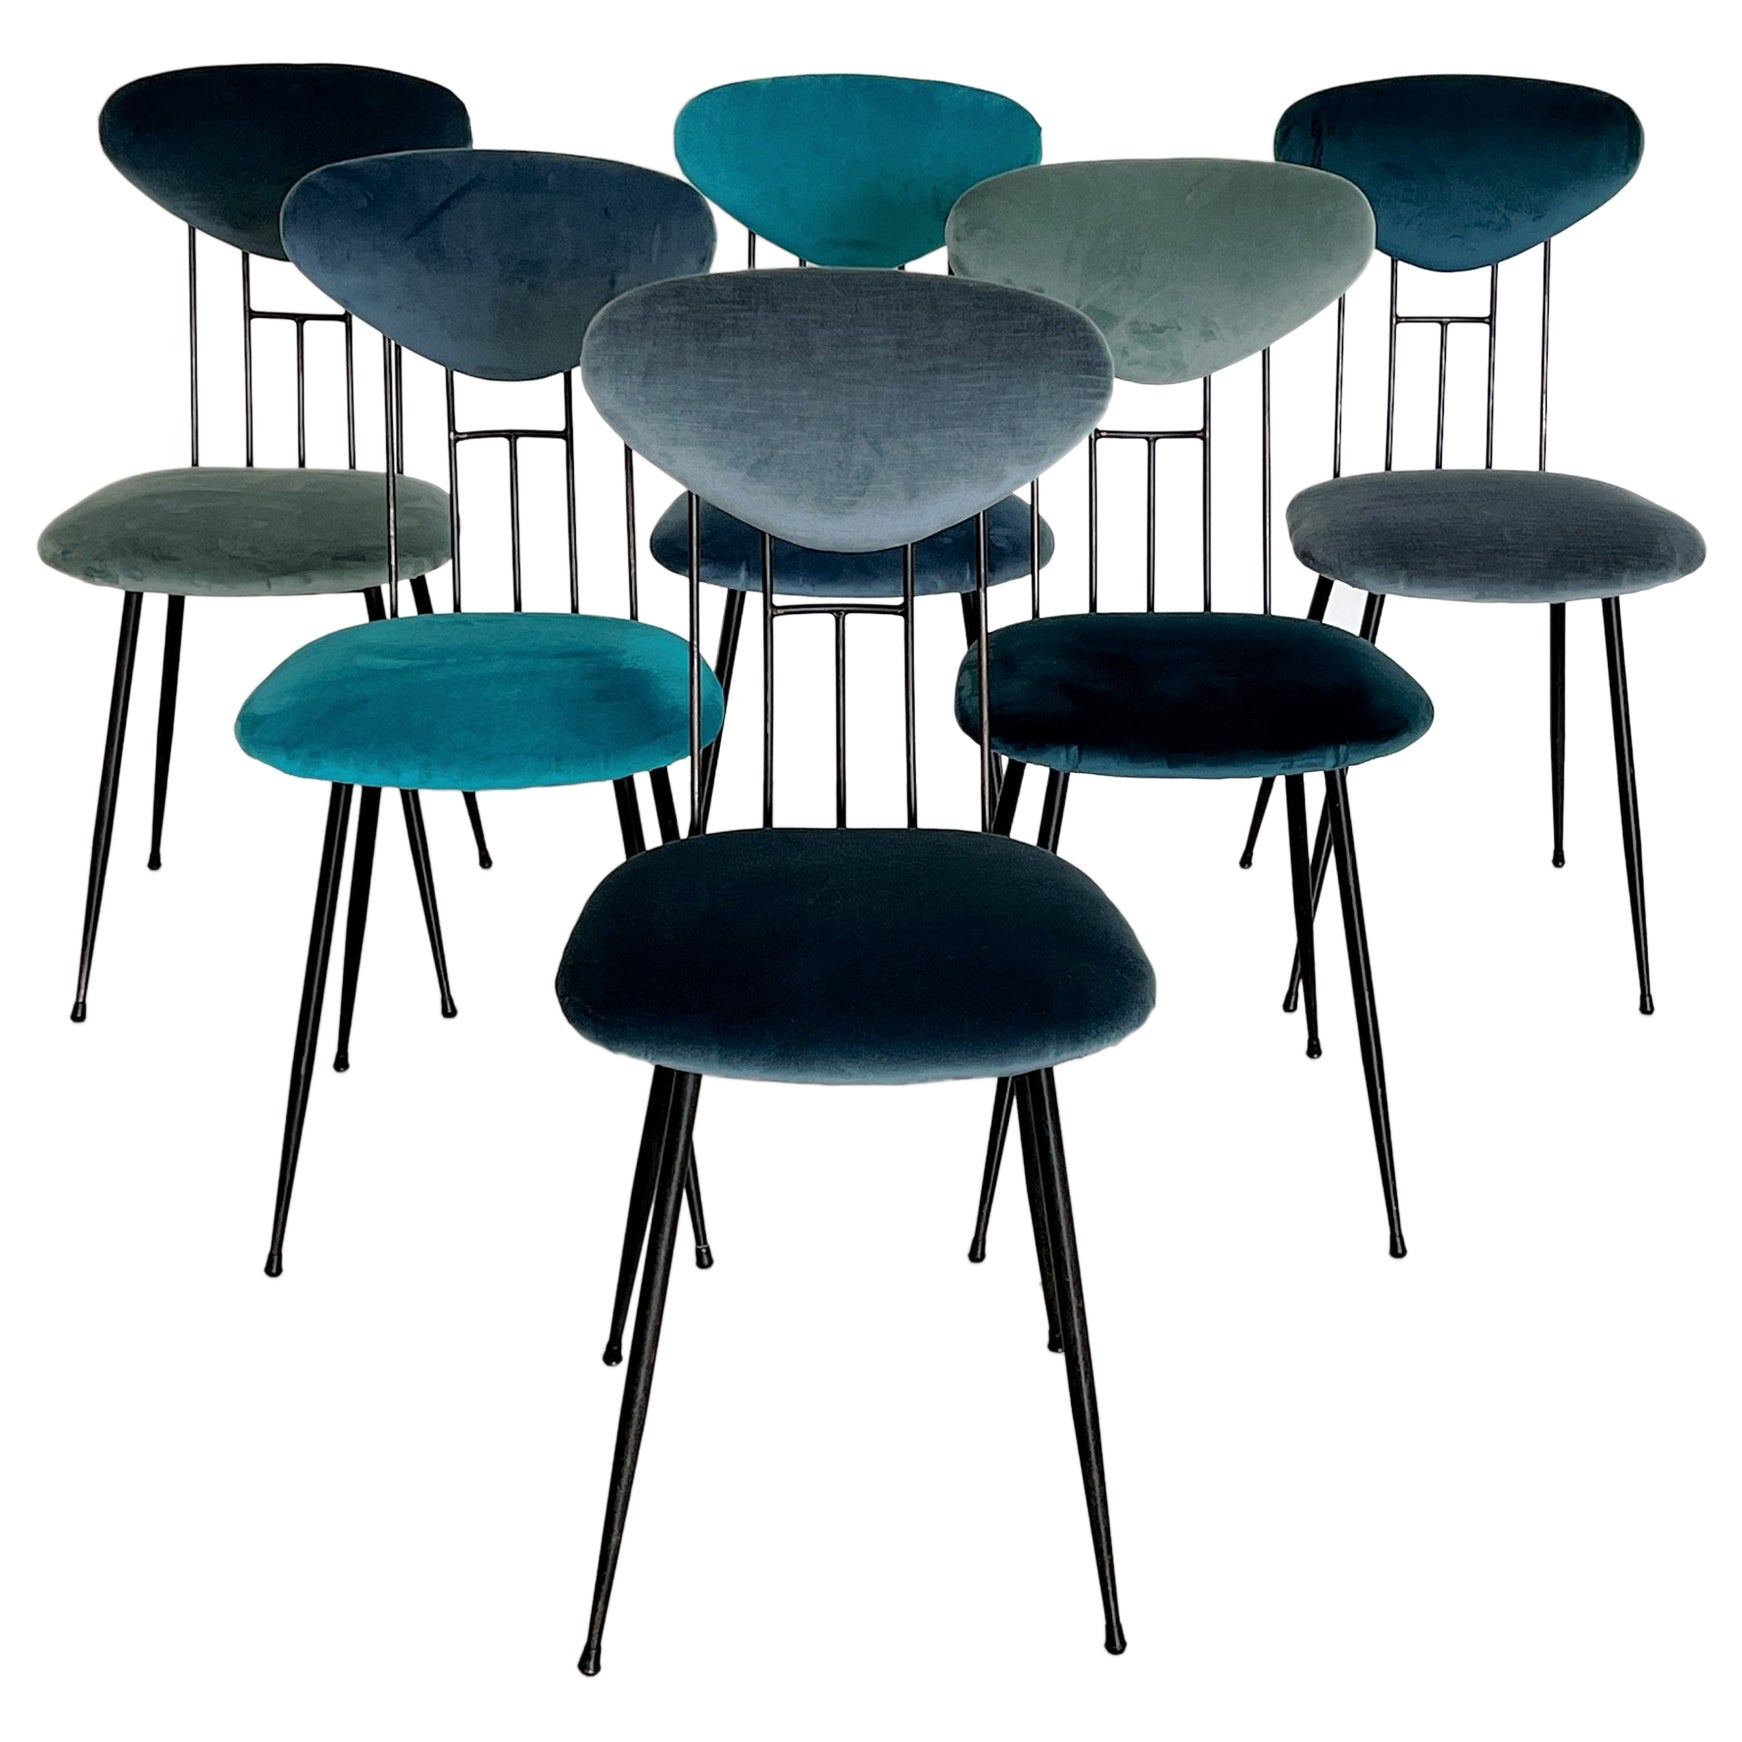 Italian Midcentury Dining Room Chairs Re-Upholstered in Velvet, 1960s